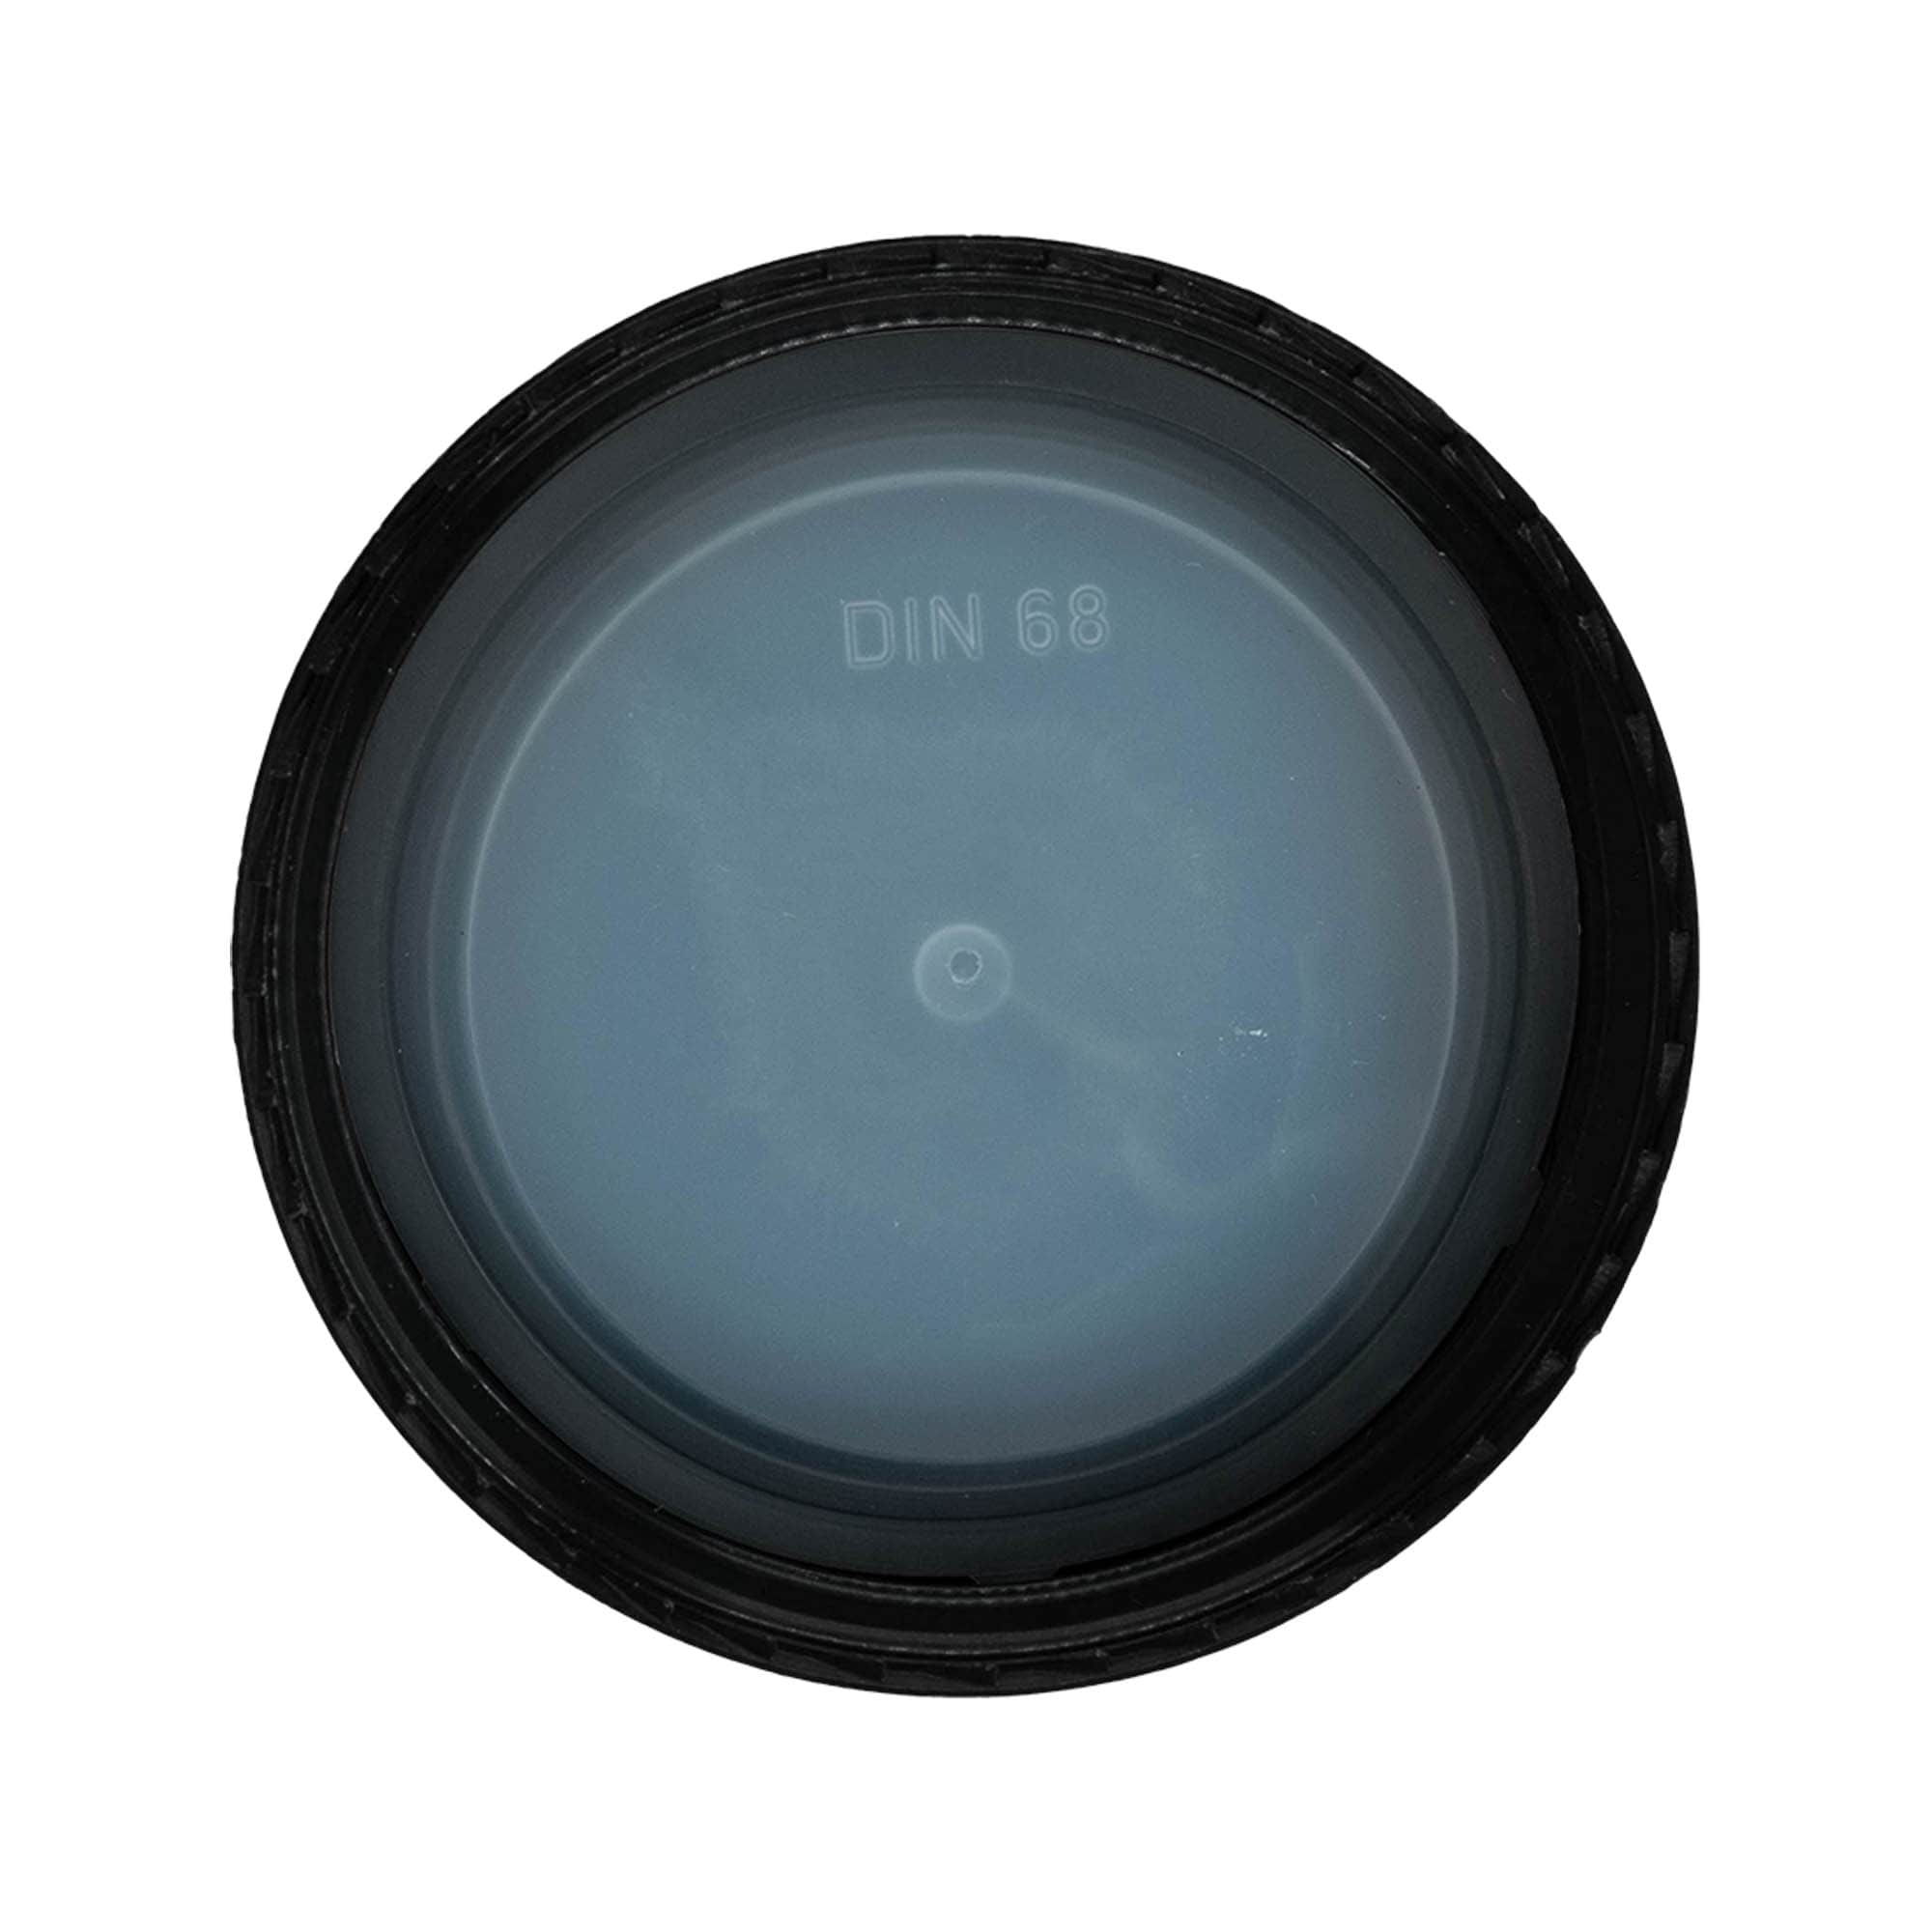 Zakrętka, tworzywo sztuczne PP, kolor czarny, do zamknięcia: DIN 68